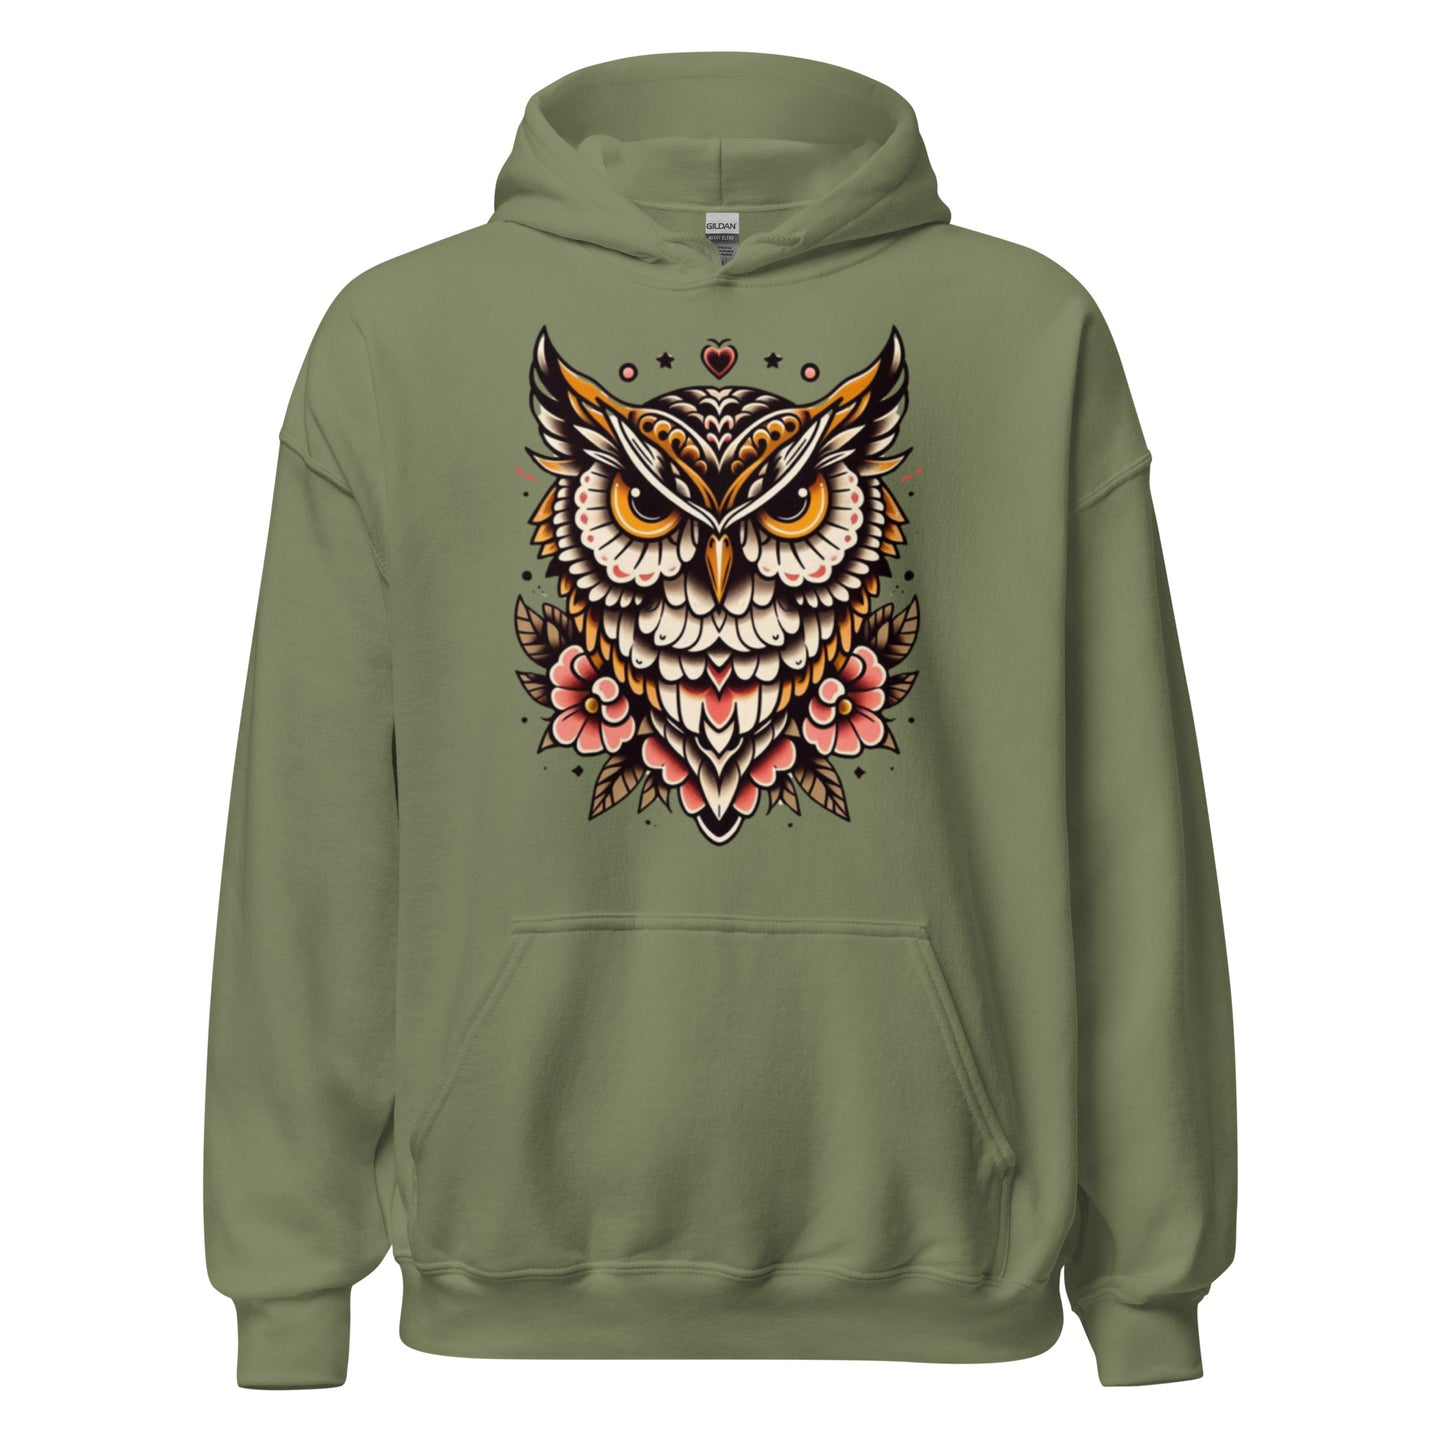 Premium Hoodie - Trad Owl - Unisex